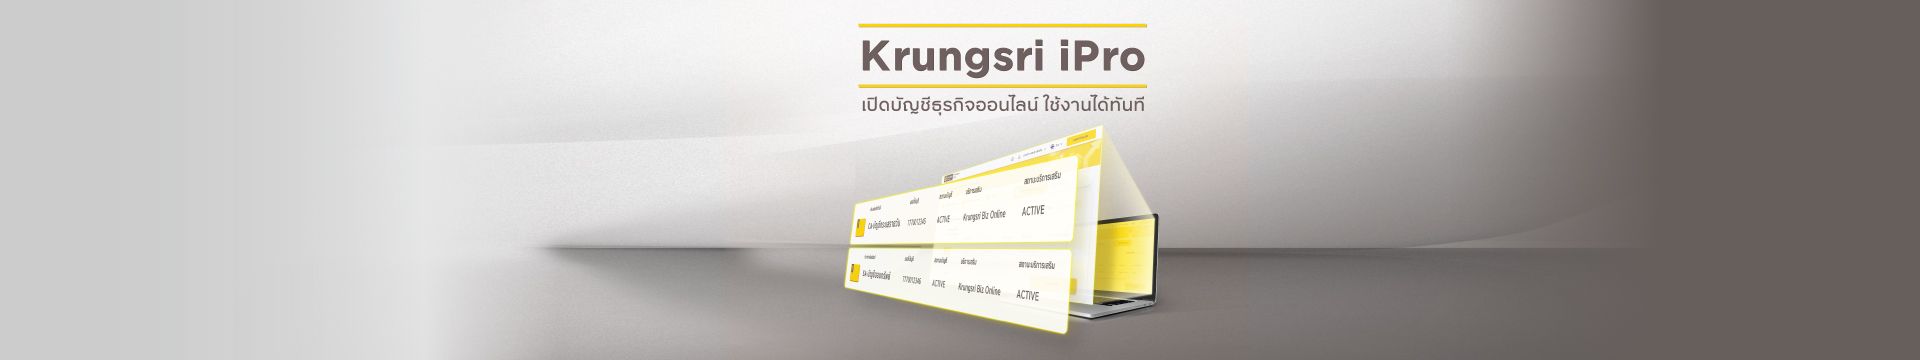 Krungsri Ipro เปิดบัญชีธุรกิจออนไลน์ ใช้งานได้ทันที